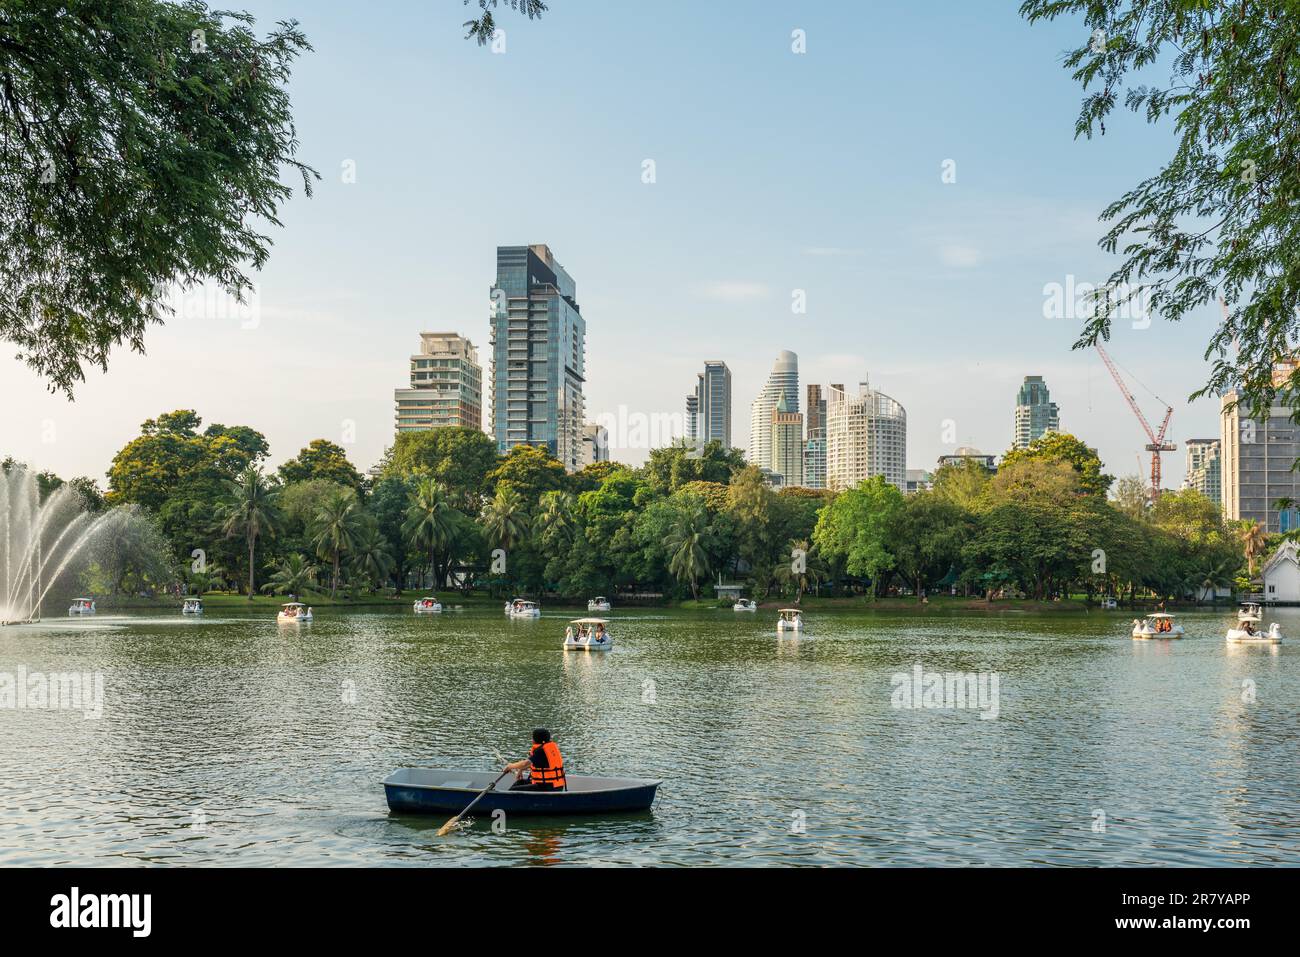 Il Parco Lumphinee è il più grande spazio pubblico nel centro di Bangkok. Il parco offre alberi, parchi giochi e contiene un lago artistico Foto Stock